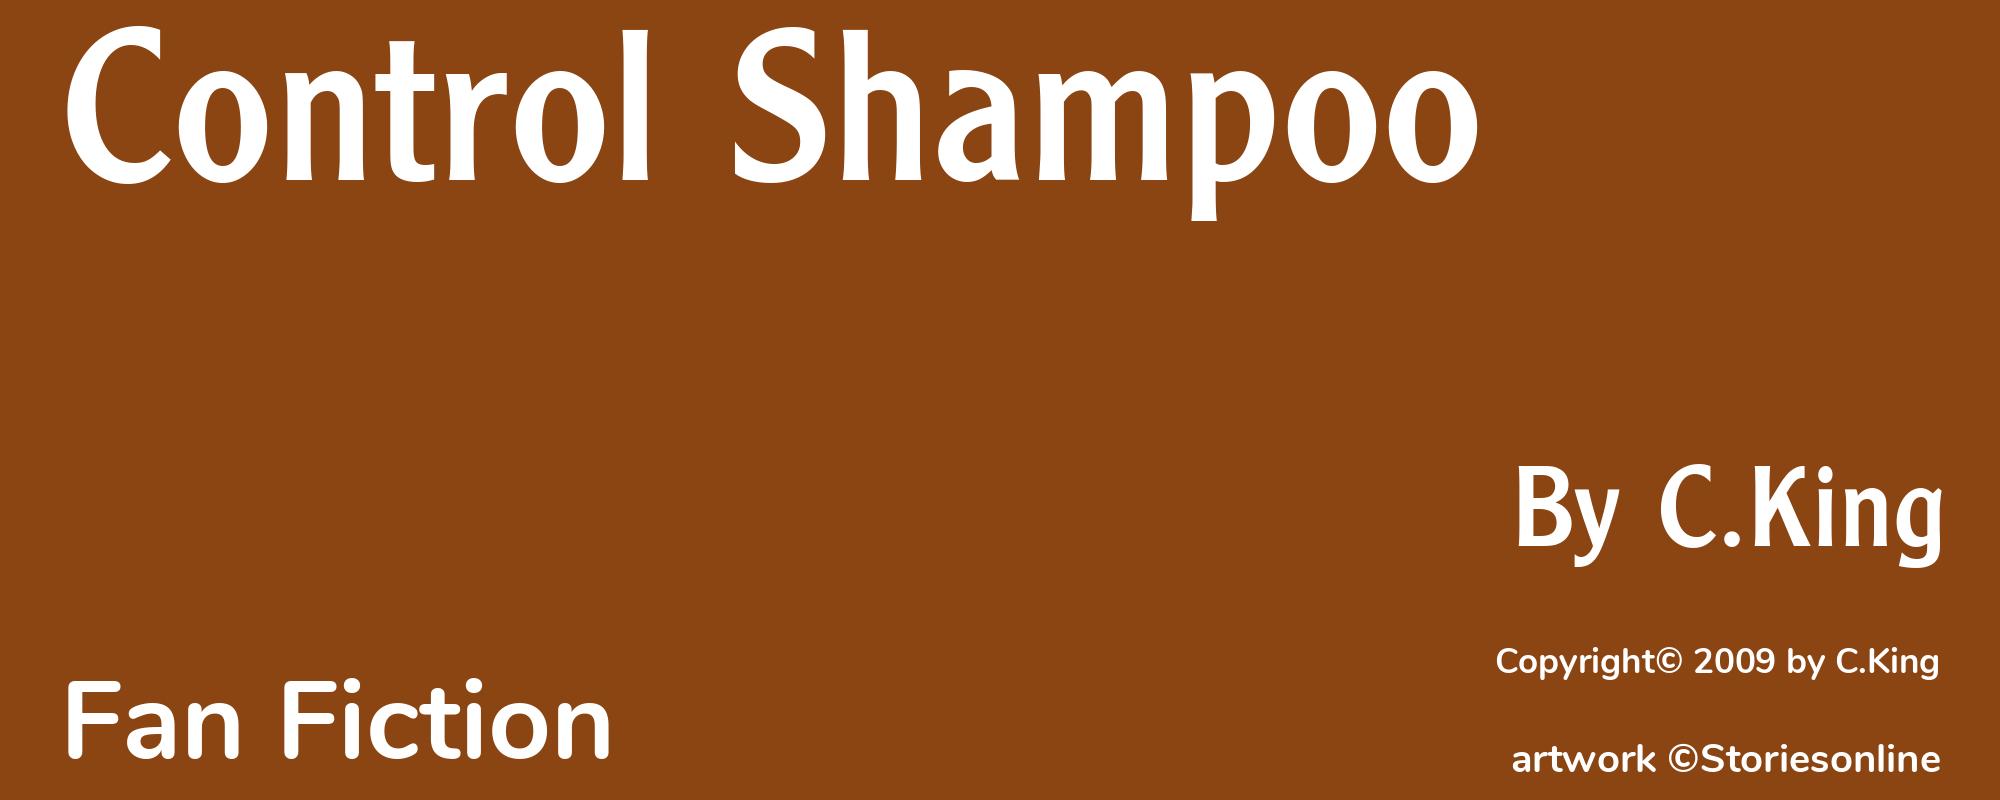 Control Shampoo - Cover